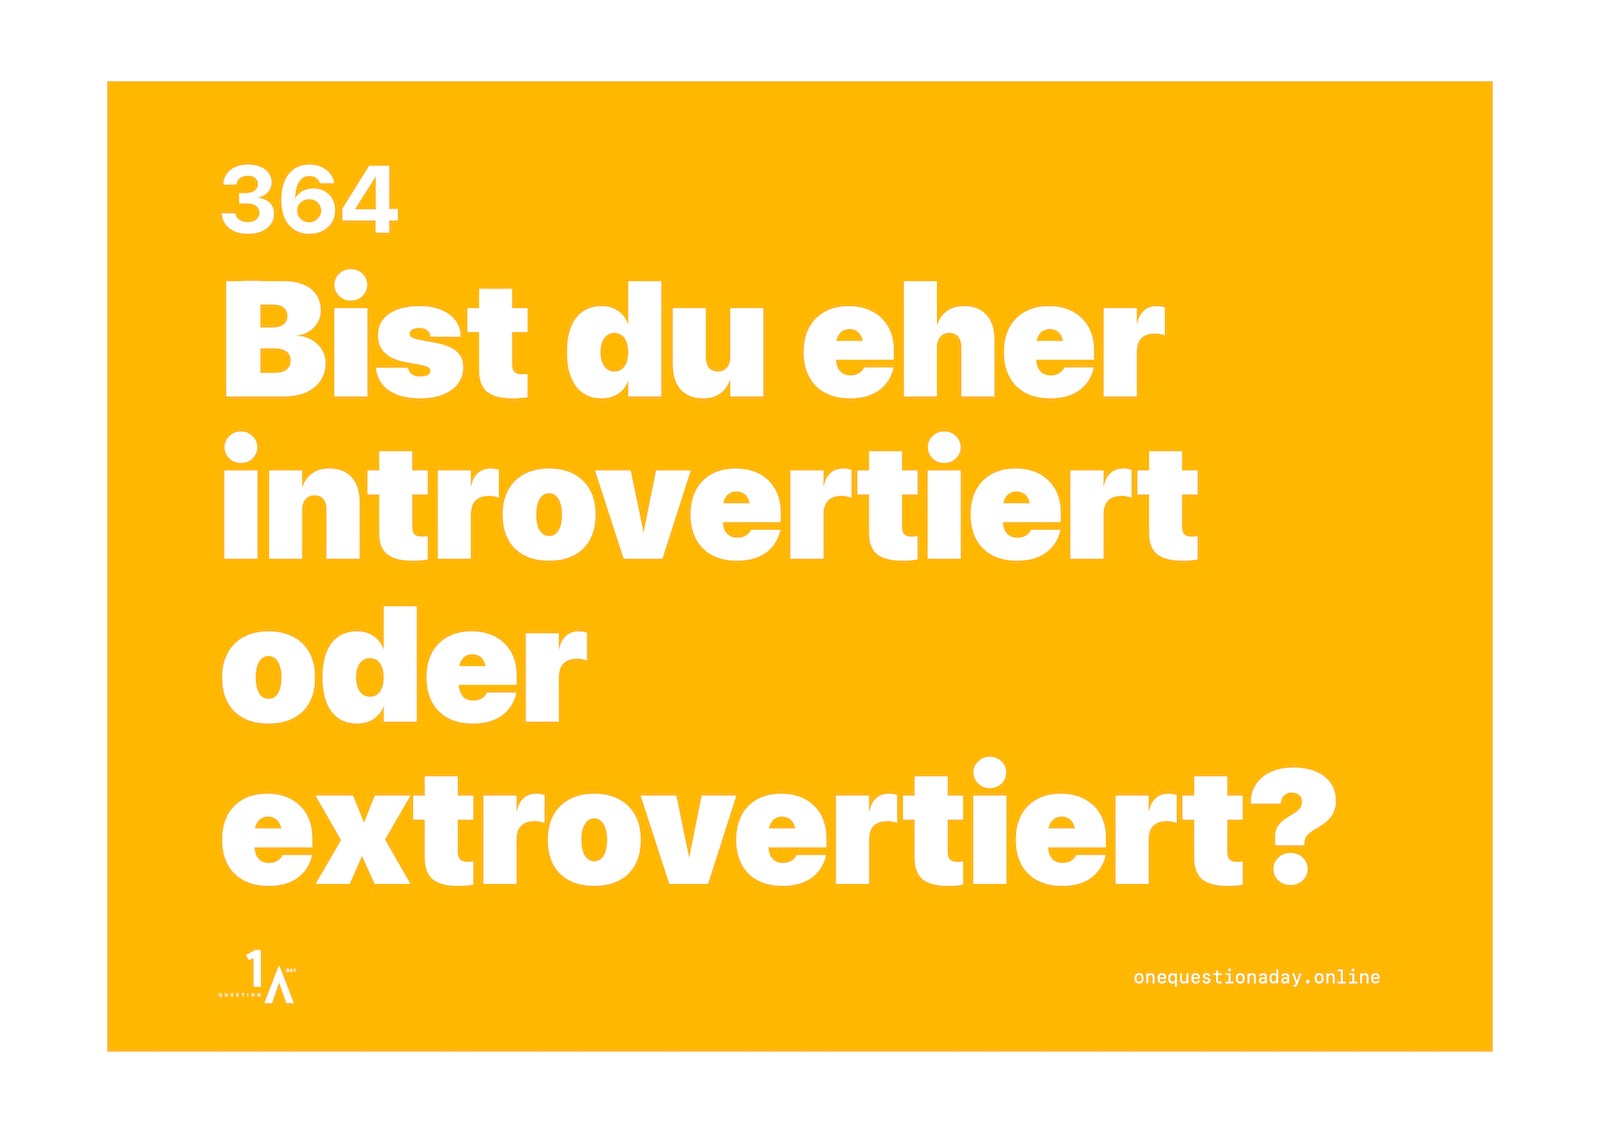 Das Bild ist ein farbiges Poster, auf dem in weisser Schrift die Frage steht: "Bist du eher introvertiert oder extrovertiert?"